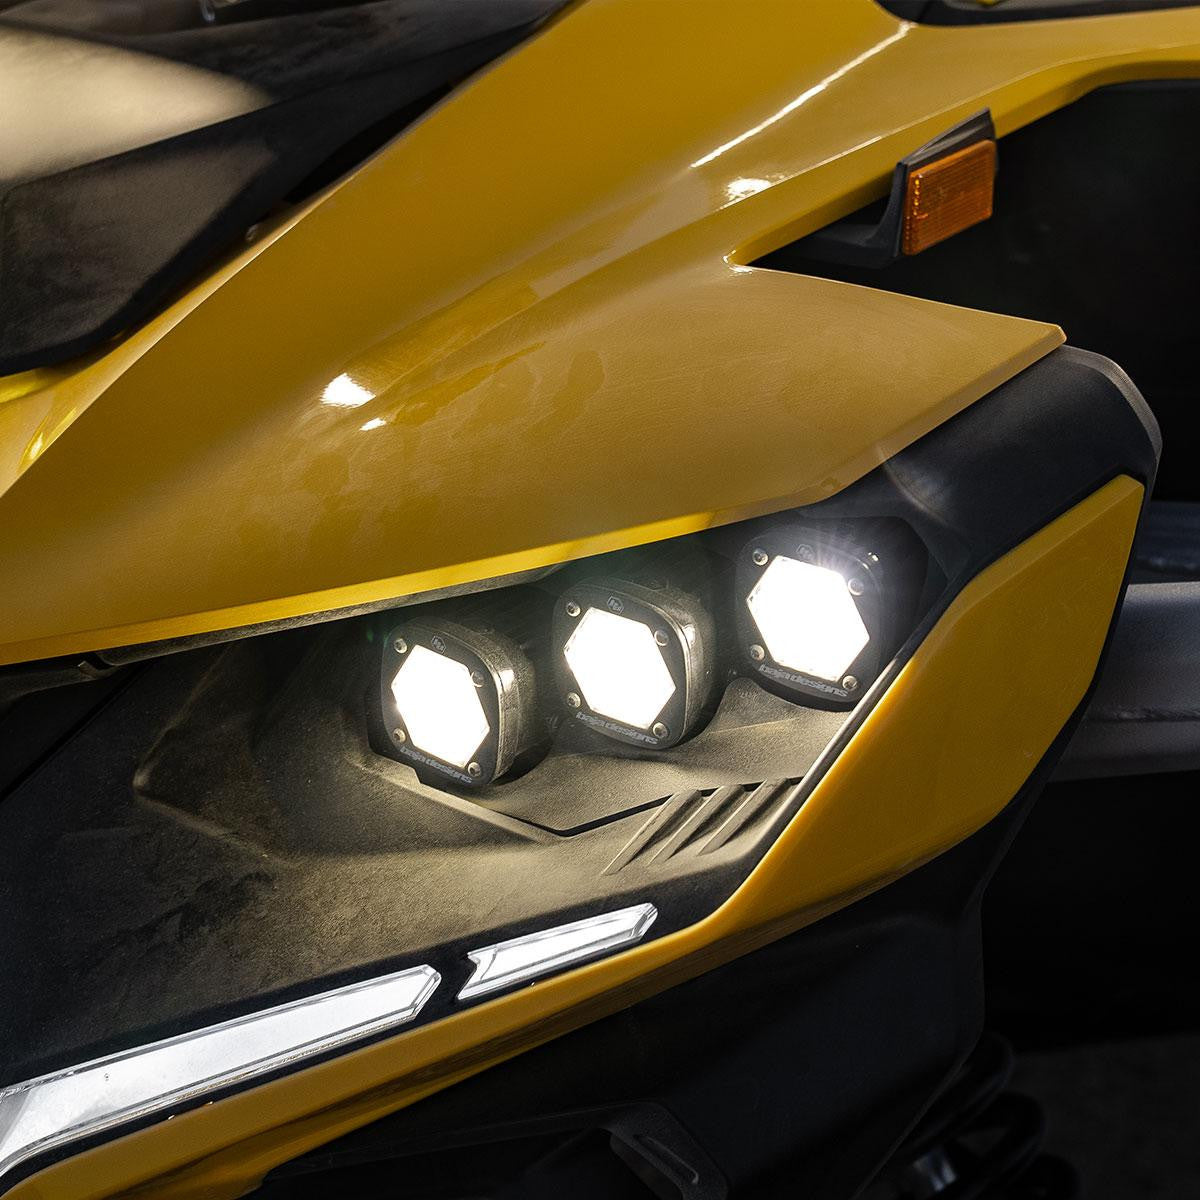 2024 Can-Am Maverick R Triple S1 "Unlimited" Headlight Kit - Baja Designs